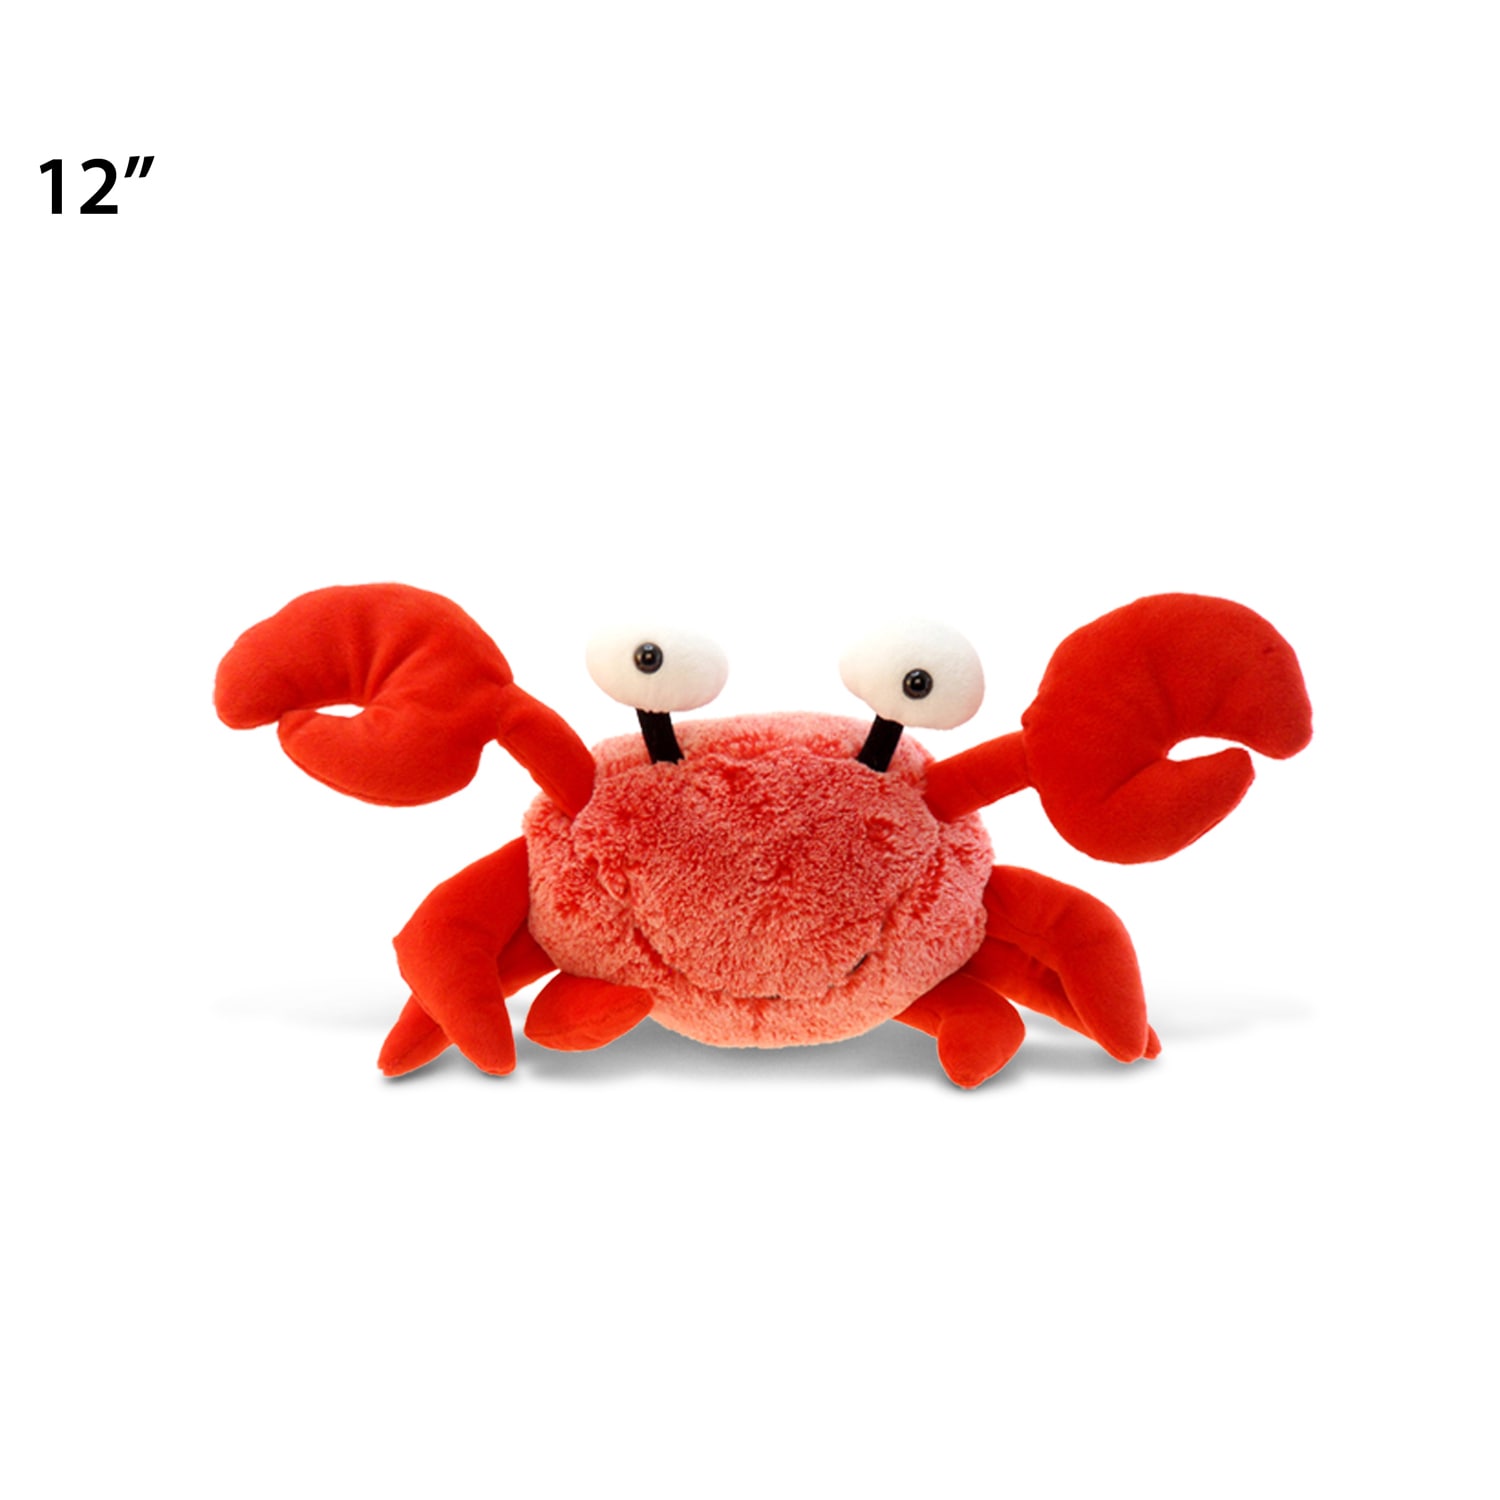 crab plush toy